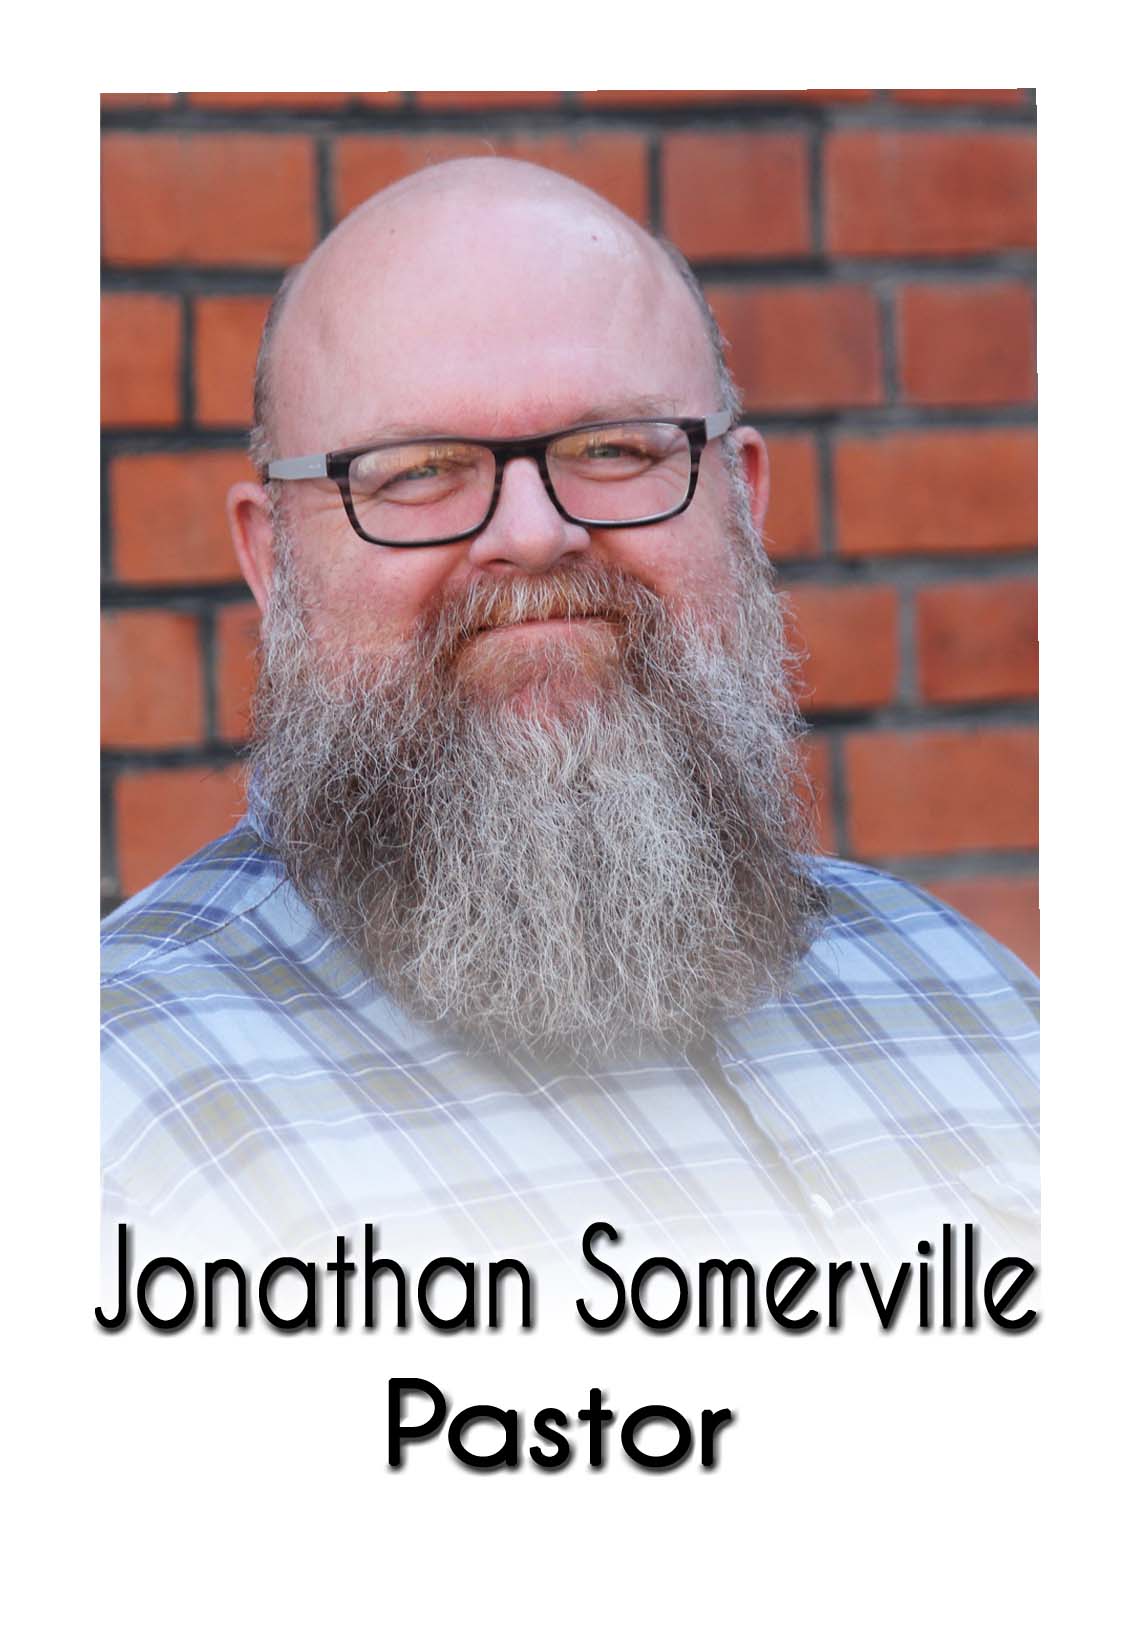 Jonathan Somerville labelled